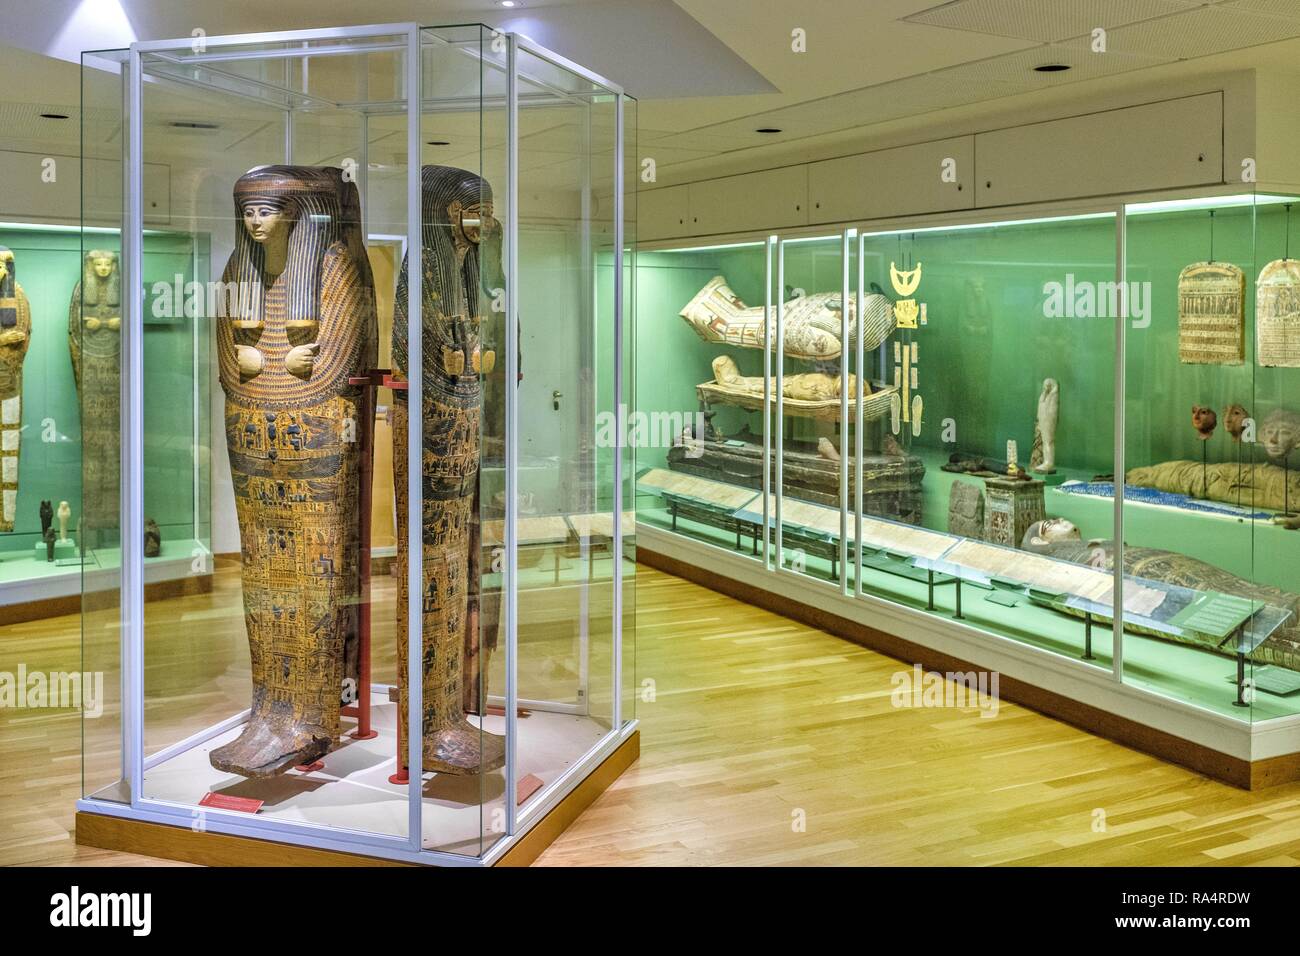 Dania - region Zealand - Kopenhaga - muzeum sztuki starozytnej Gliptoteka - sala wystawowa poswiecona eksponatom ze starozytnego Egiptu - mumie i sarkofagi egipskie Denmark - Zealand region - Copenhag Stock Photo